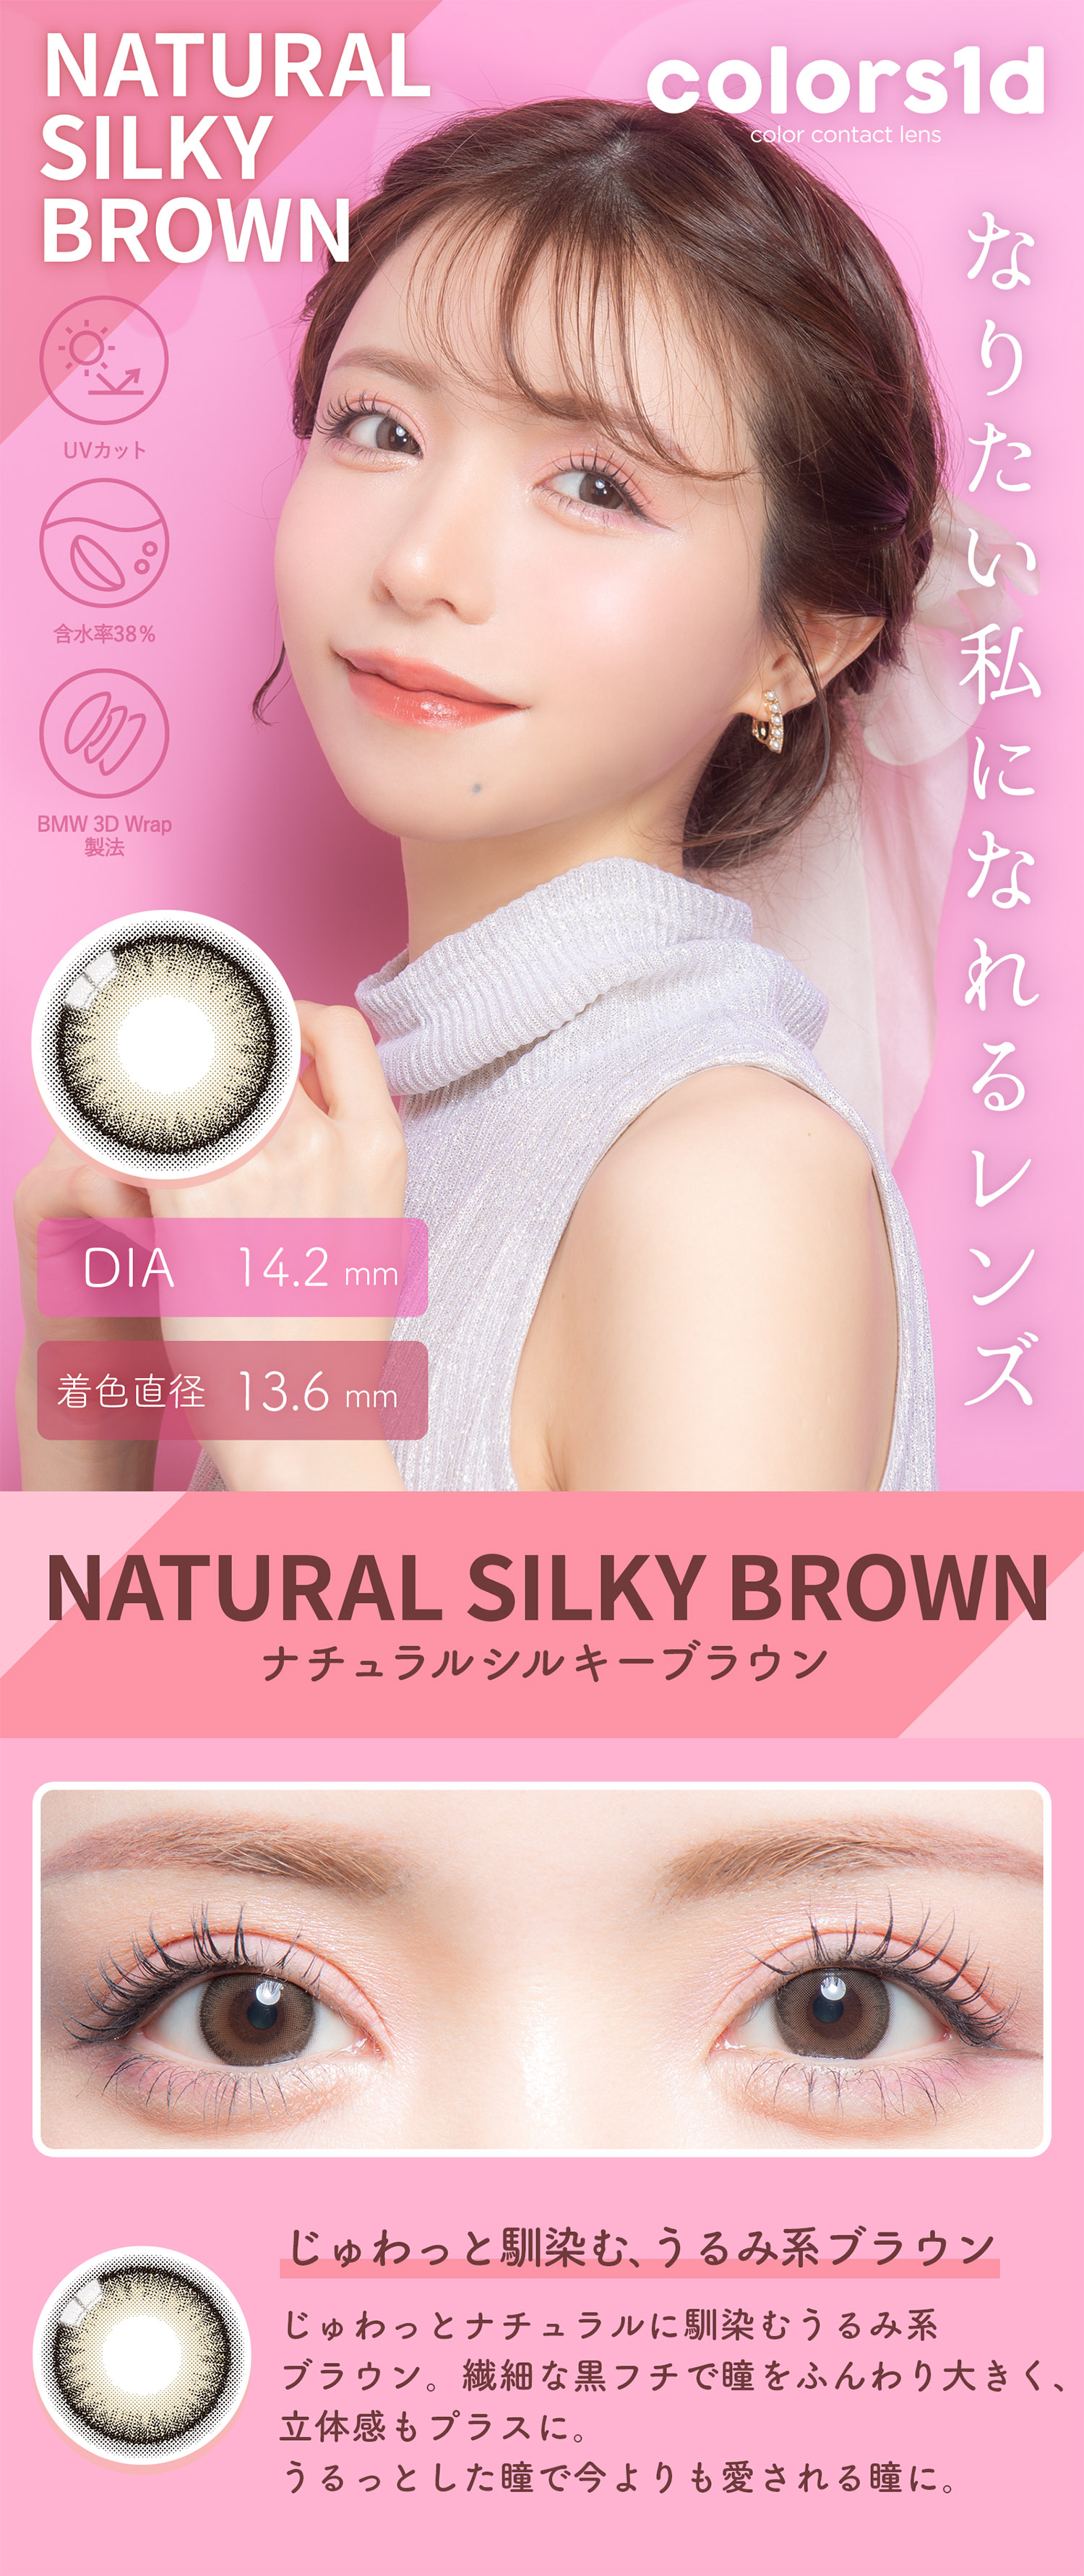 Colors(カラーズ)ナチュラルシルキーブラウン-Natural Silky Brown【度あり/度なし• ワンデー • DIA14.2】